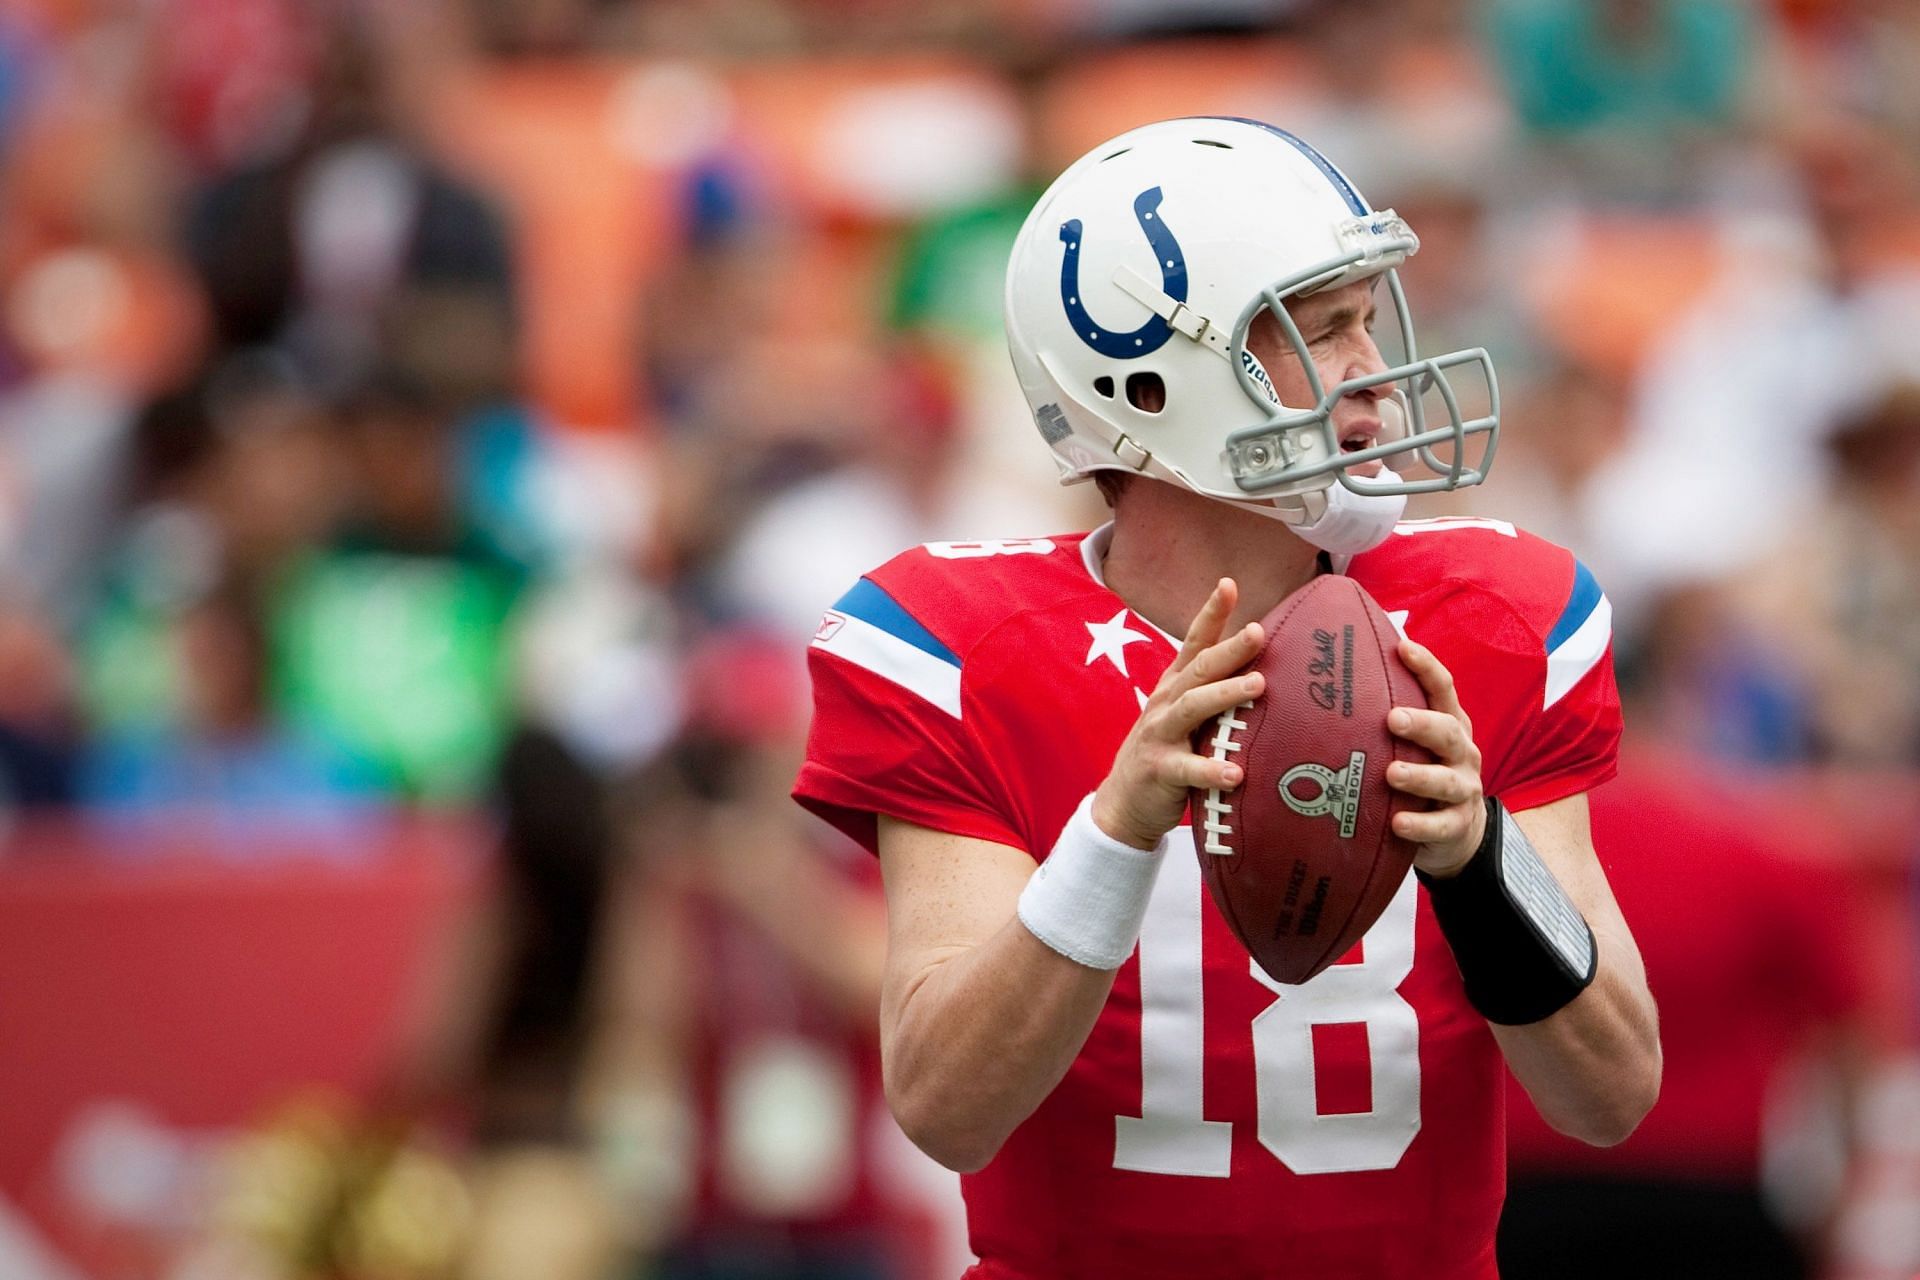 NFL Pro Bowl quarterback Peyton Manning